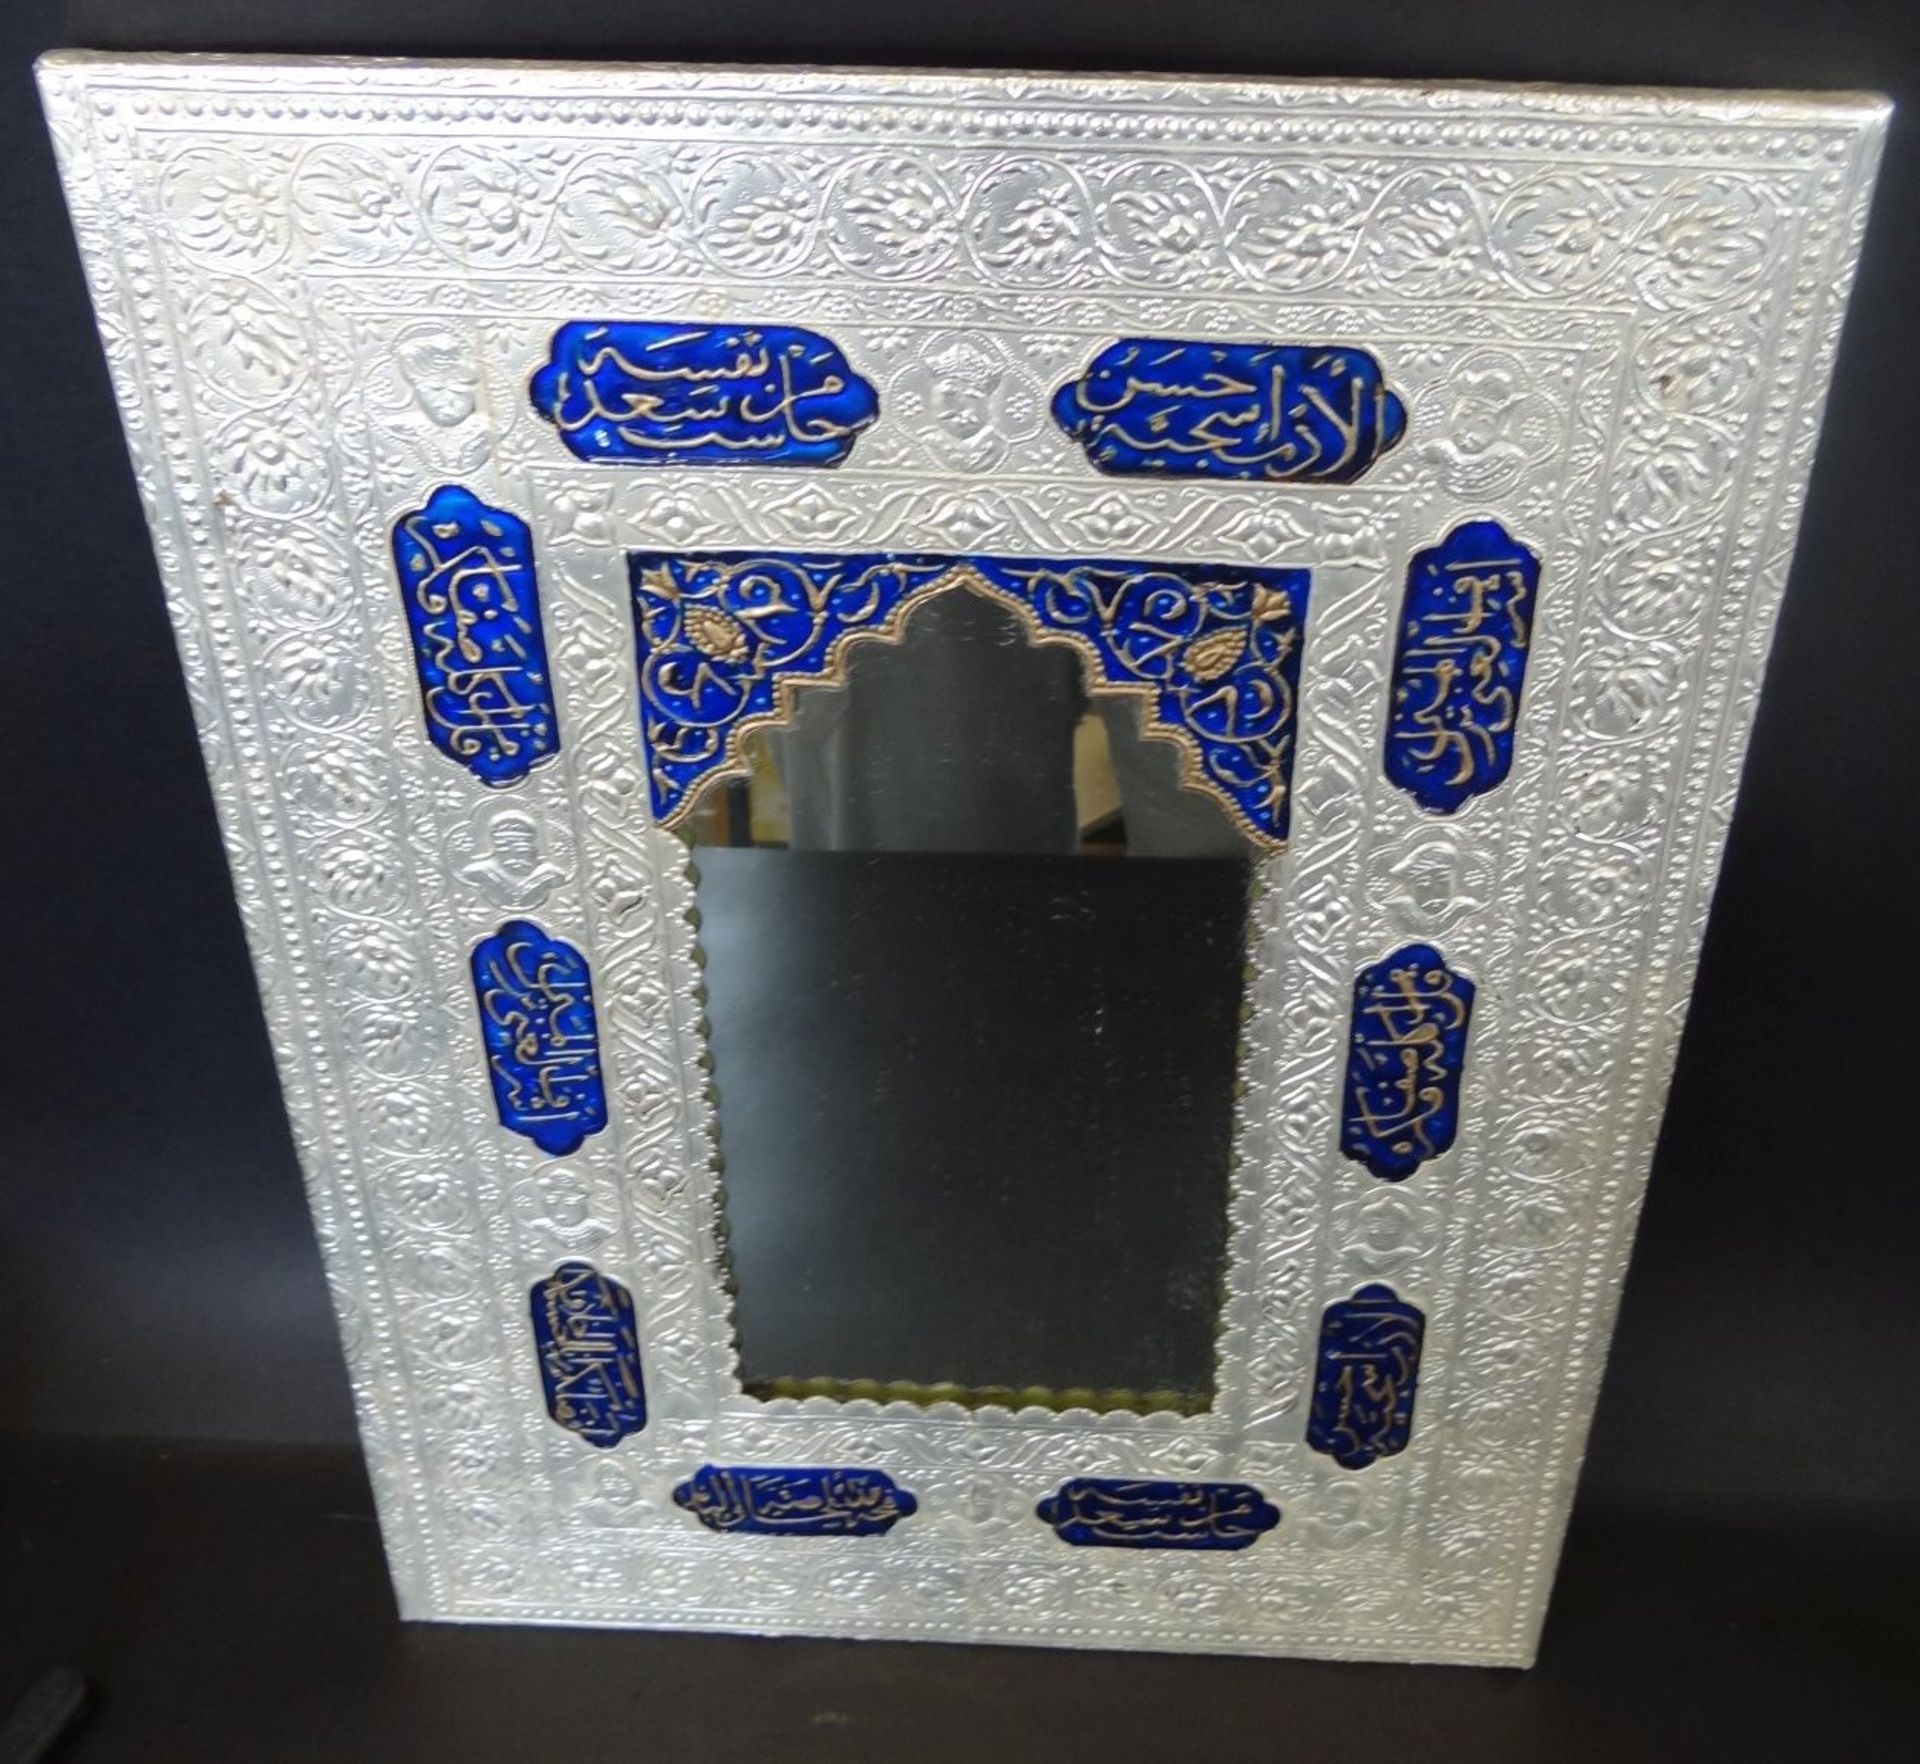 Wandspiegel, geprägtes Silber mit emaillierten Feldern, diese arabisch beschriftet, leichte